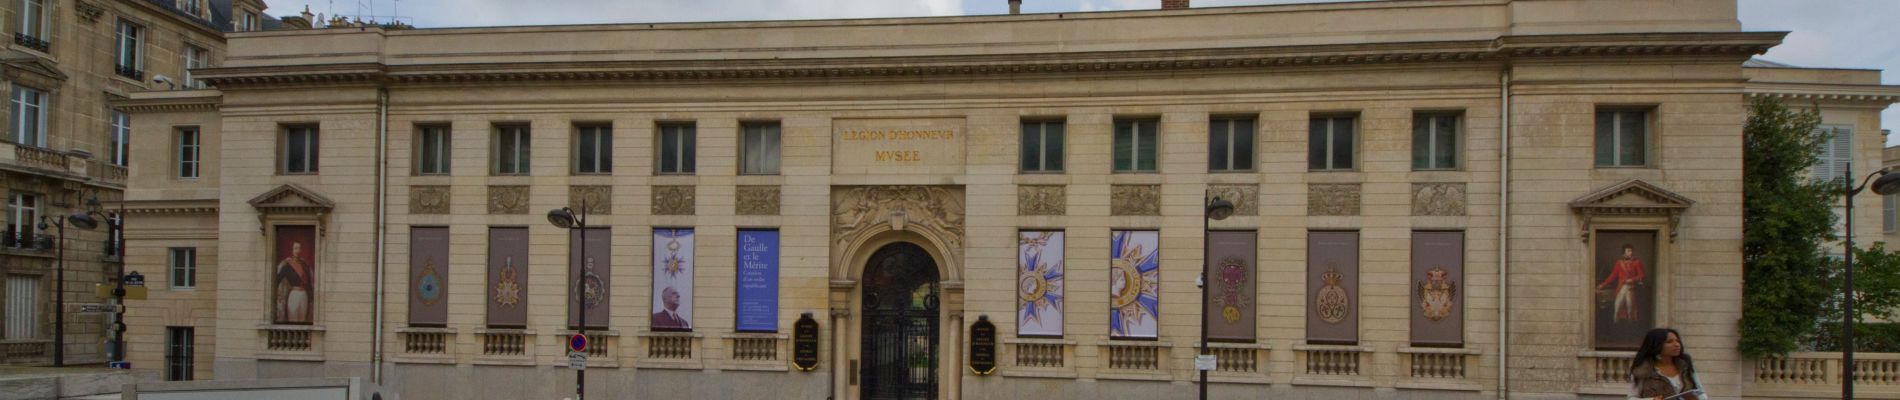 Point d'intérêt Paris - Musée national de la Légion d’honneur et des ordres de chevalerie - Photo